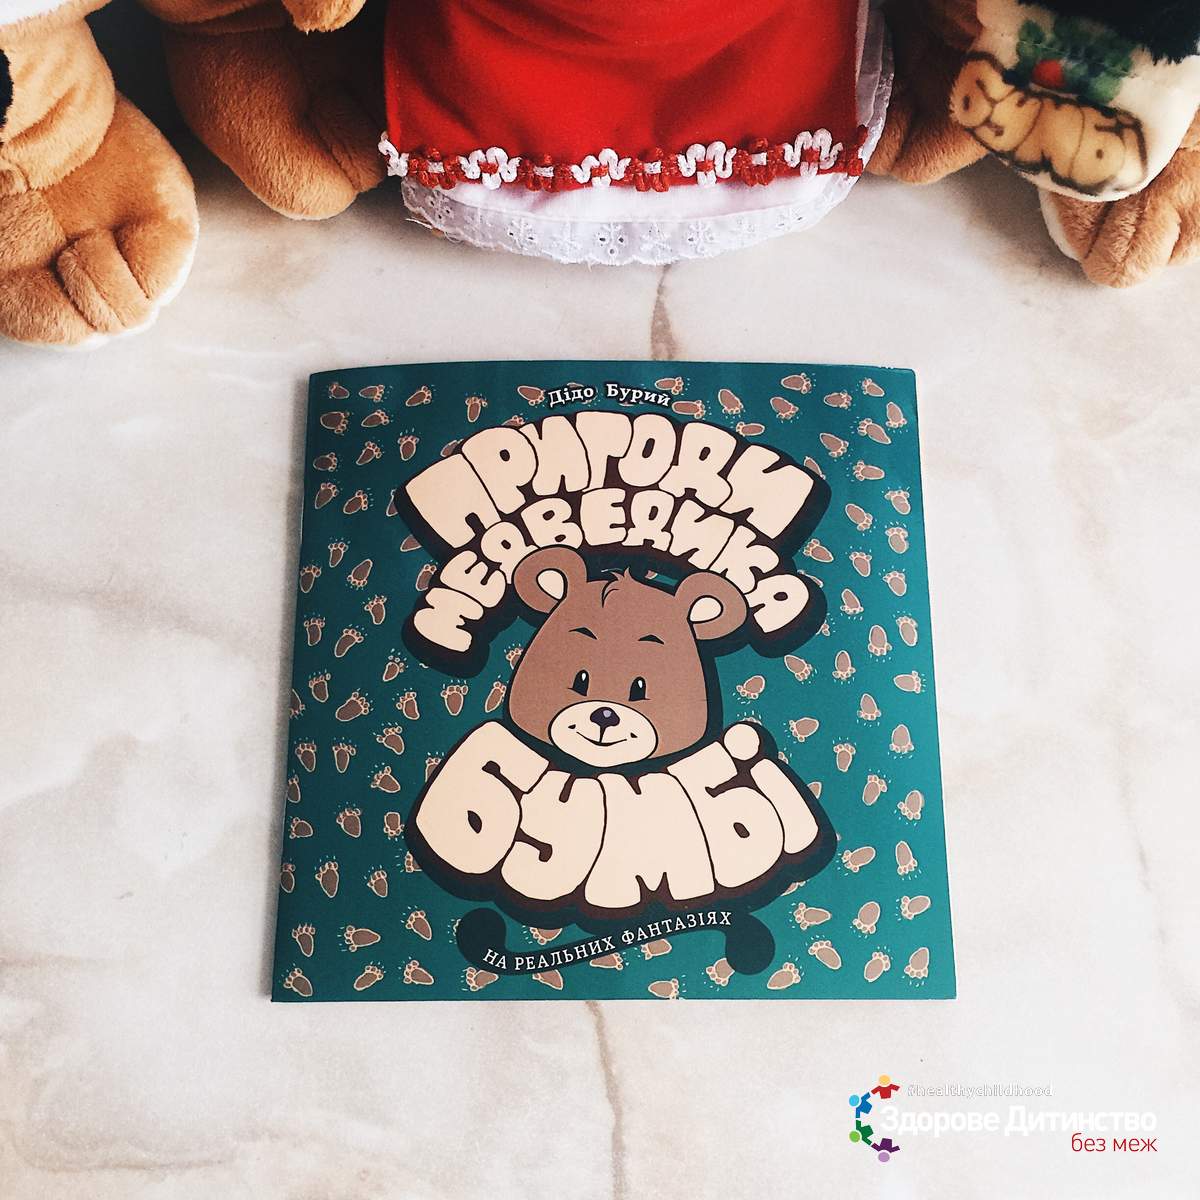 Лот №11: Ексклюзивна дитяча книга «Пригоди медведика Бумбі» головні персонажі з якої відтворені у вигляді чарівних плюшевих іграшок